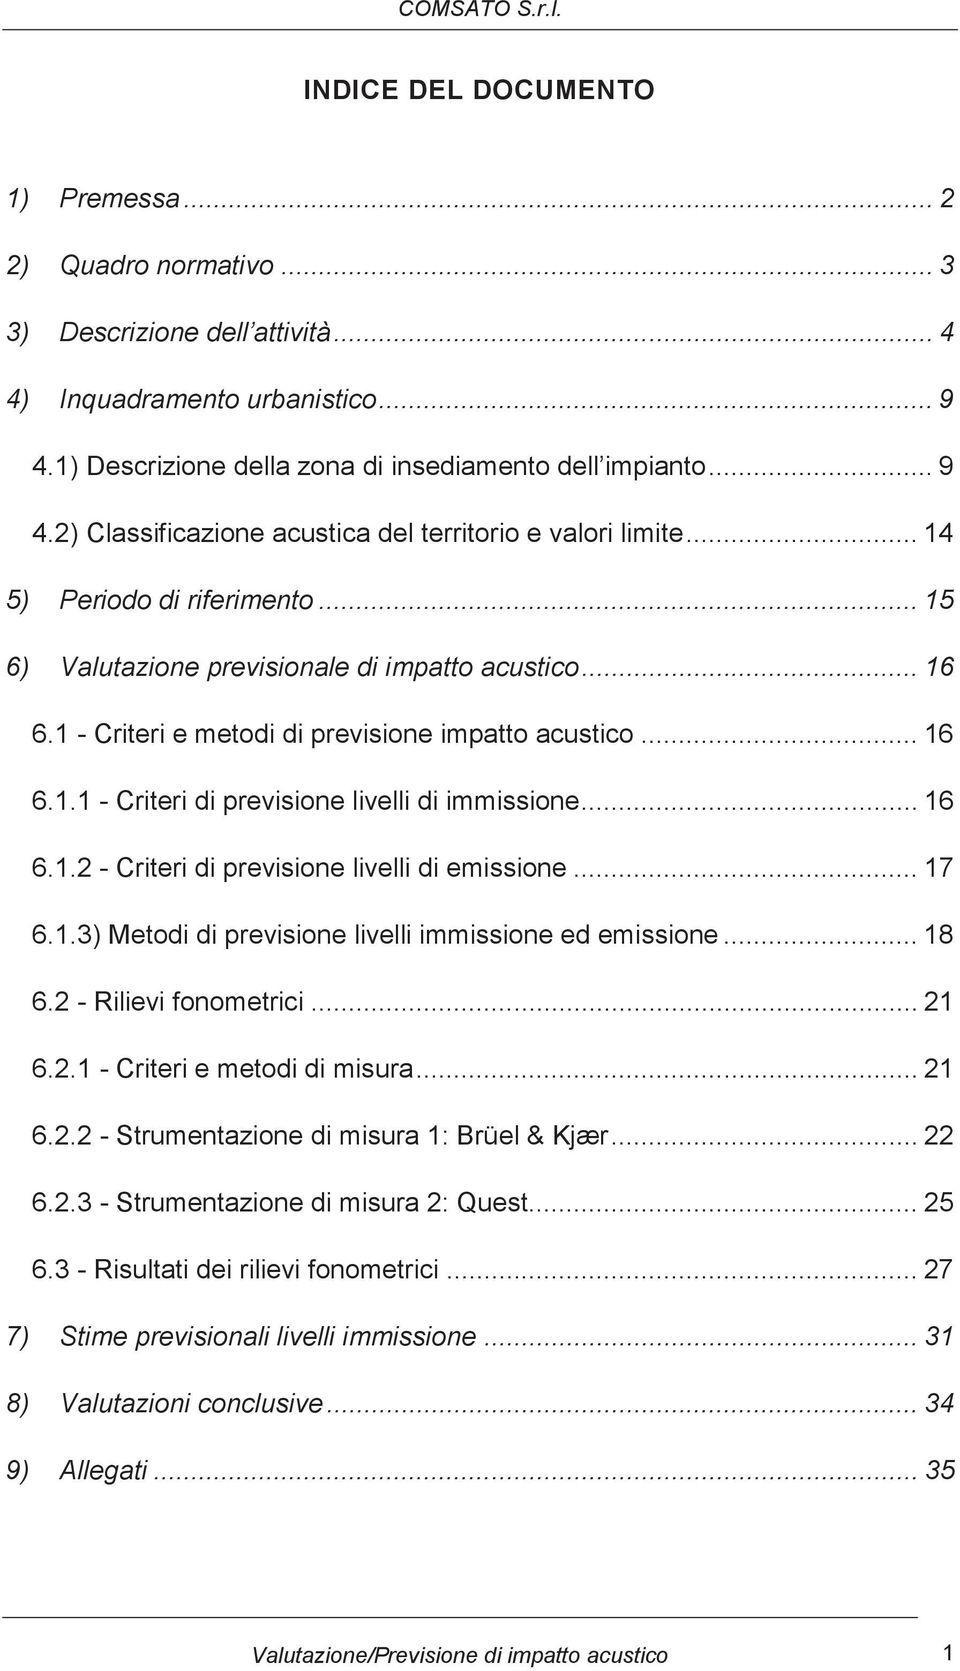 .. 16 6.1.2 - Criteri di previsione livelli di emissione... 17 6.1.3) Metodi di previsione livelli immissione ed emissione... 18 6.2 - Rilievi fonometrici... 21 6.2.1 - Criteri e metodi di misura.